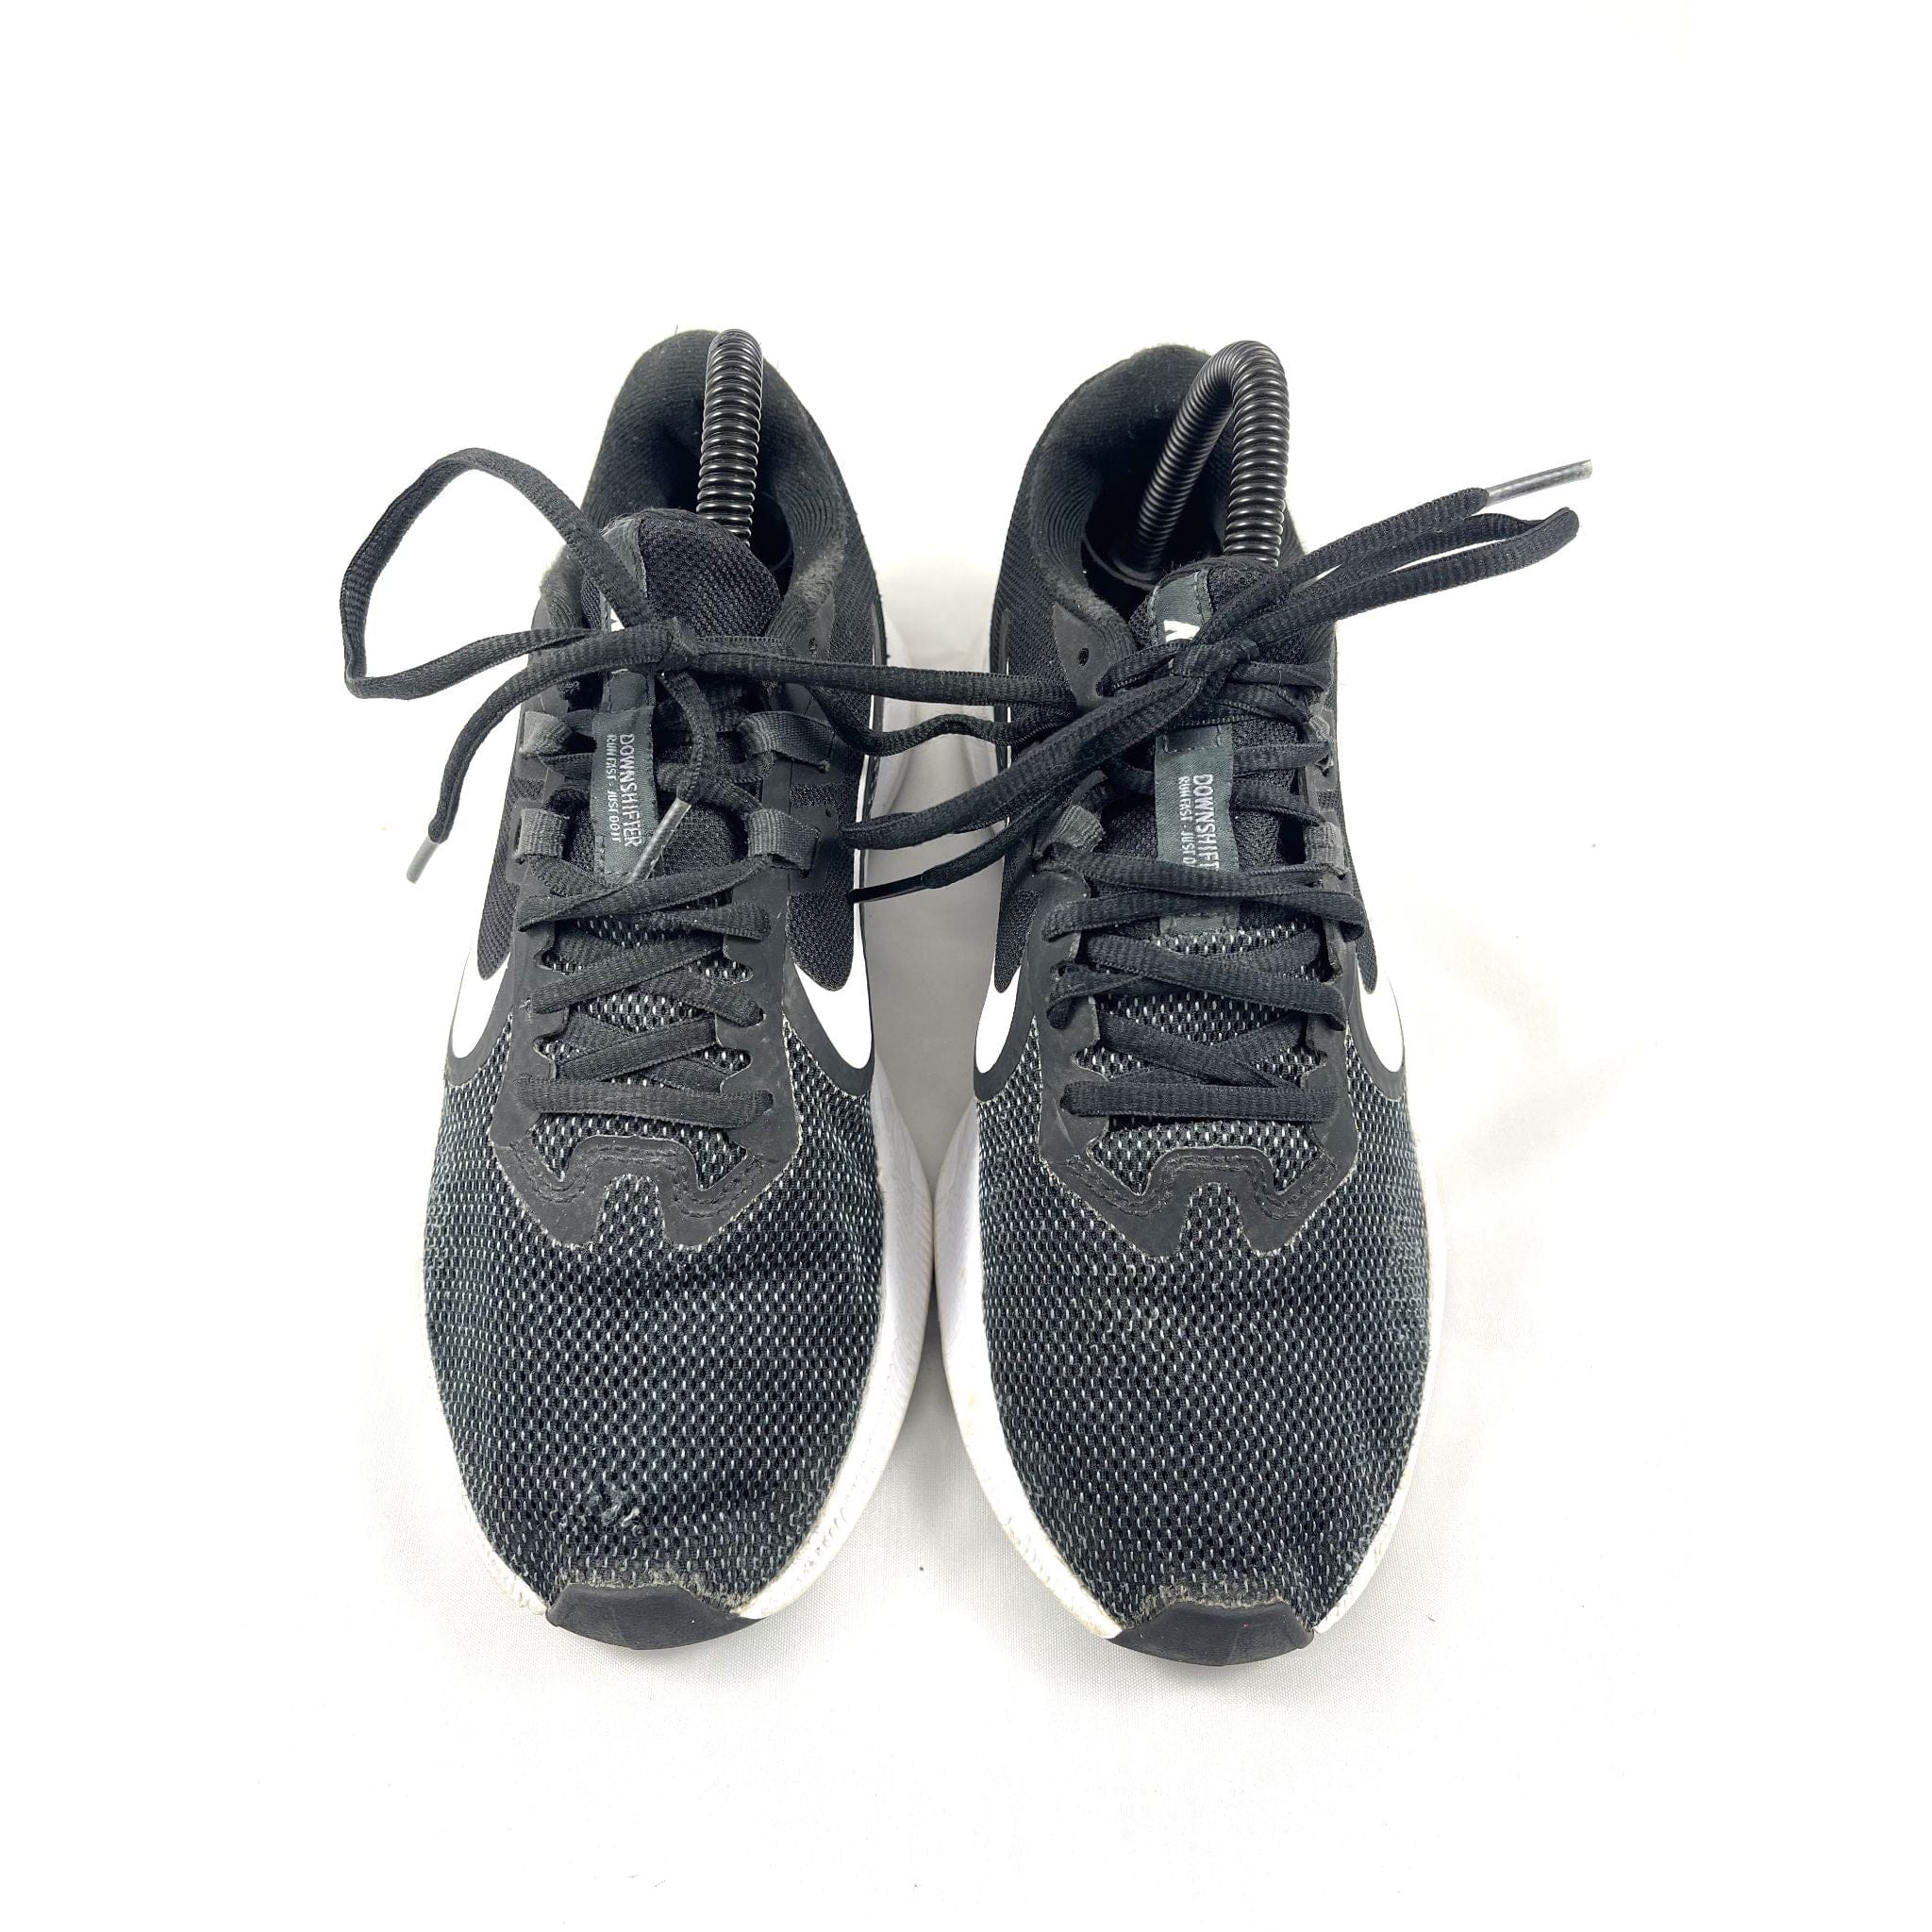 Black Nike Running Unisex Sneakers